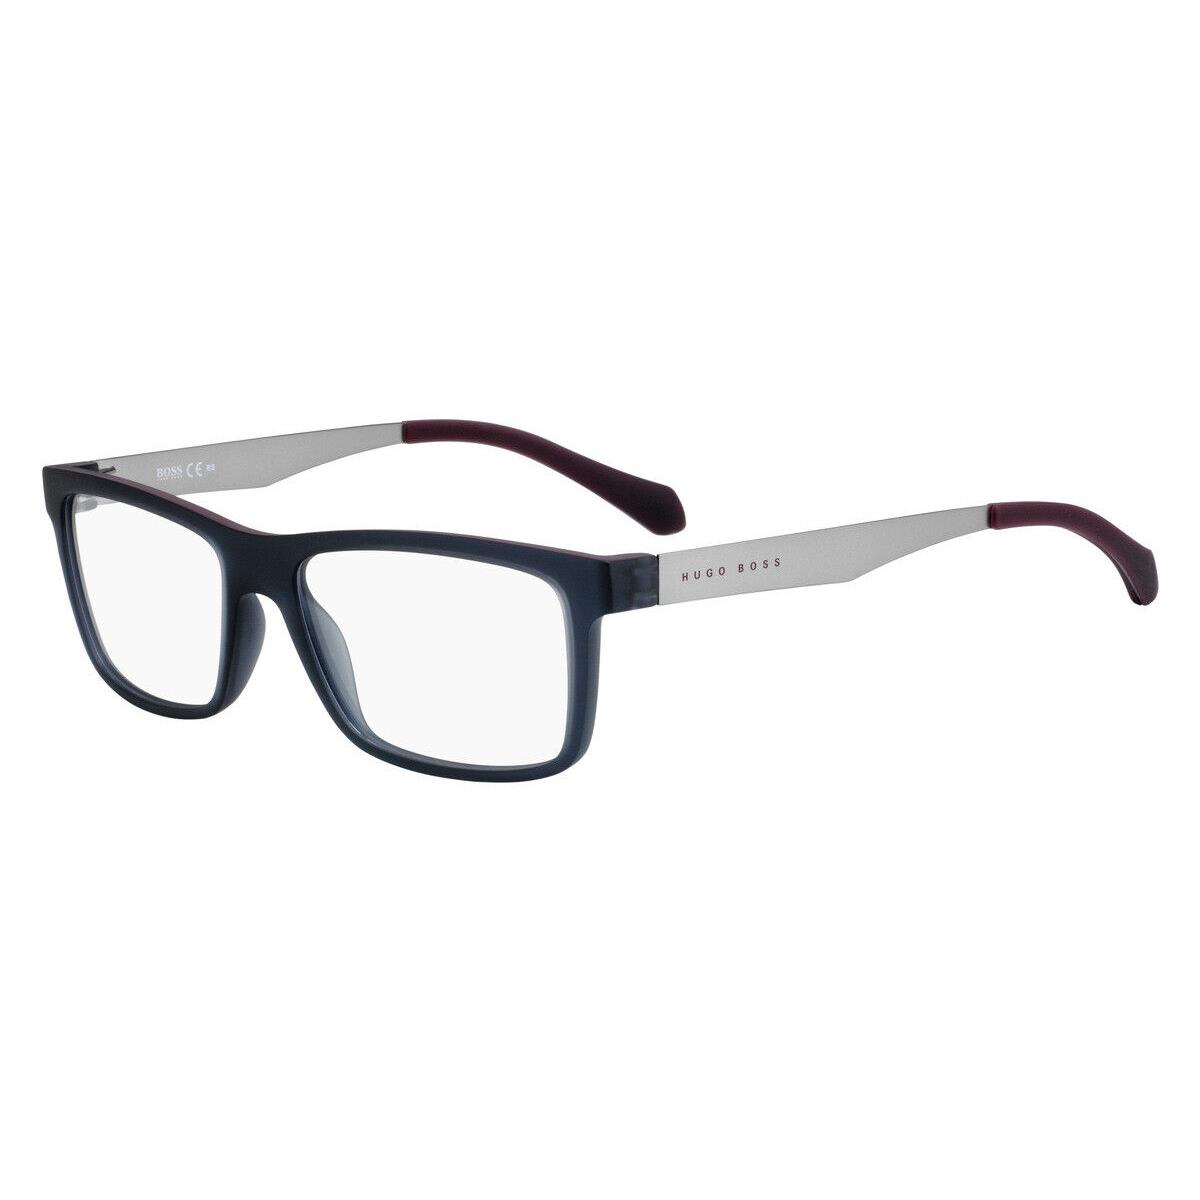 Hugo Boss 0870 Eyeglasses 005G Matte Gray Burgundy 54mm